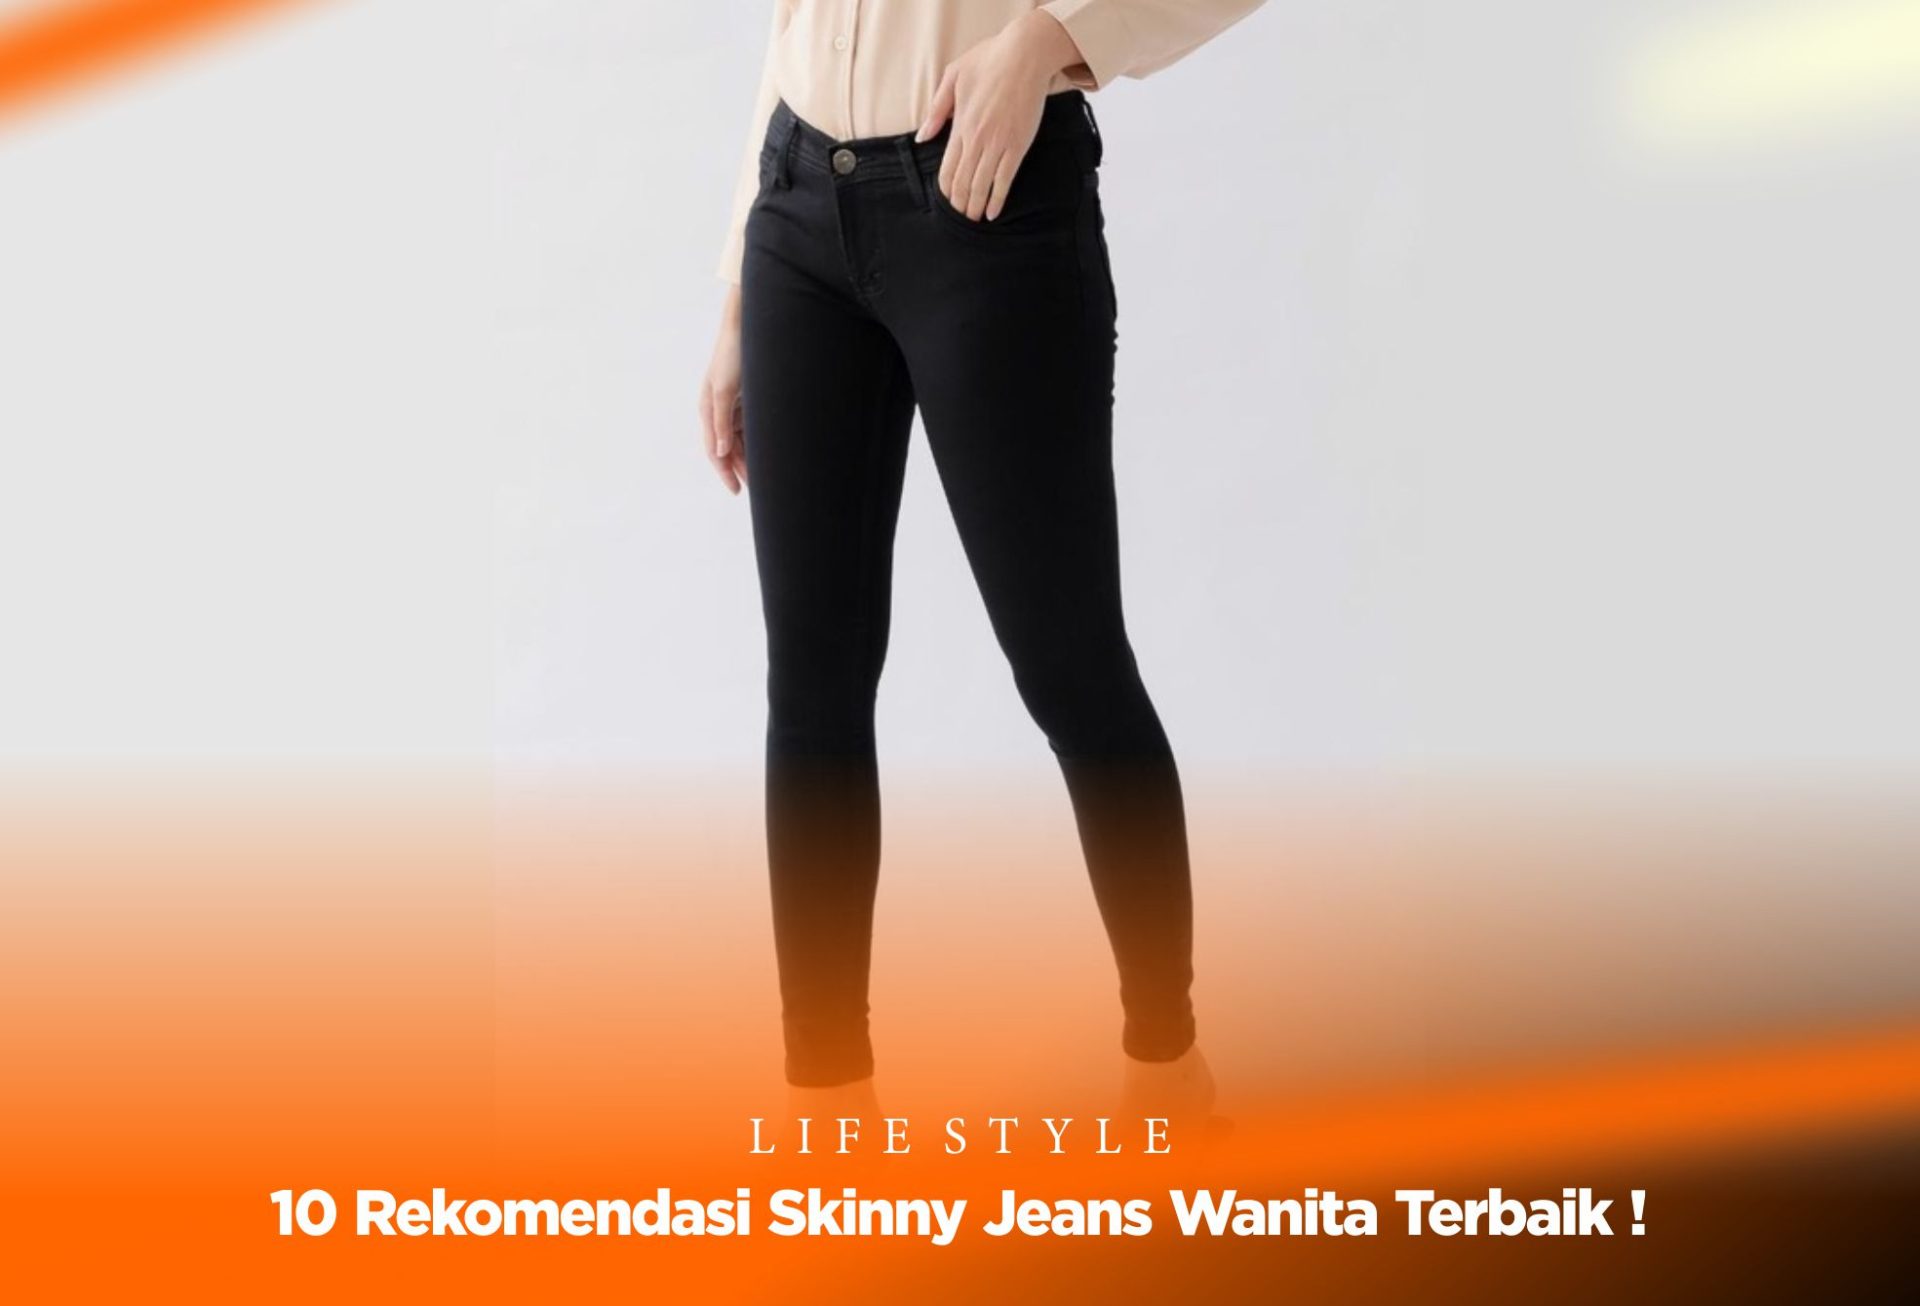 Skinny Jeans Wanita